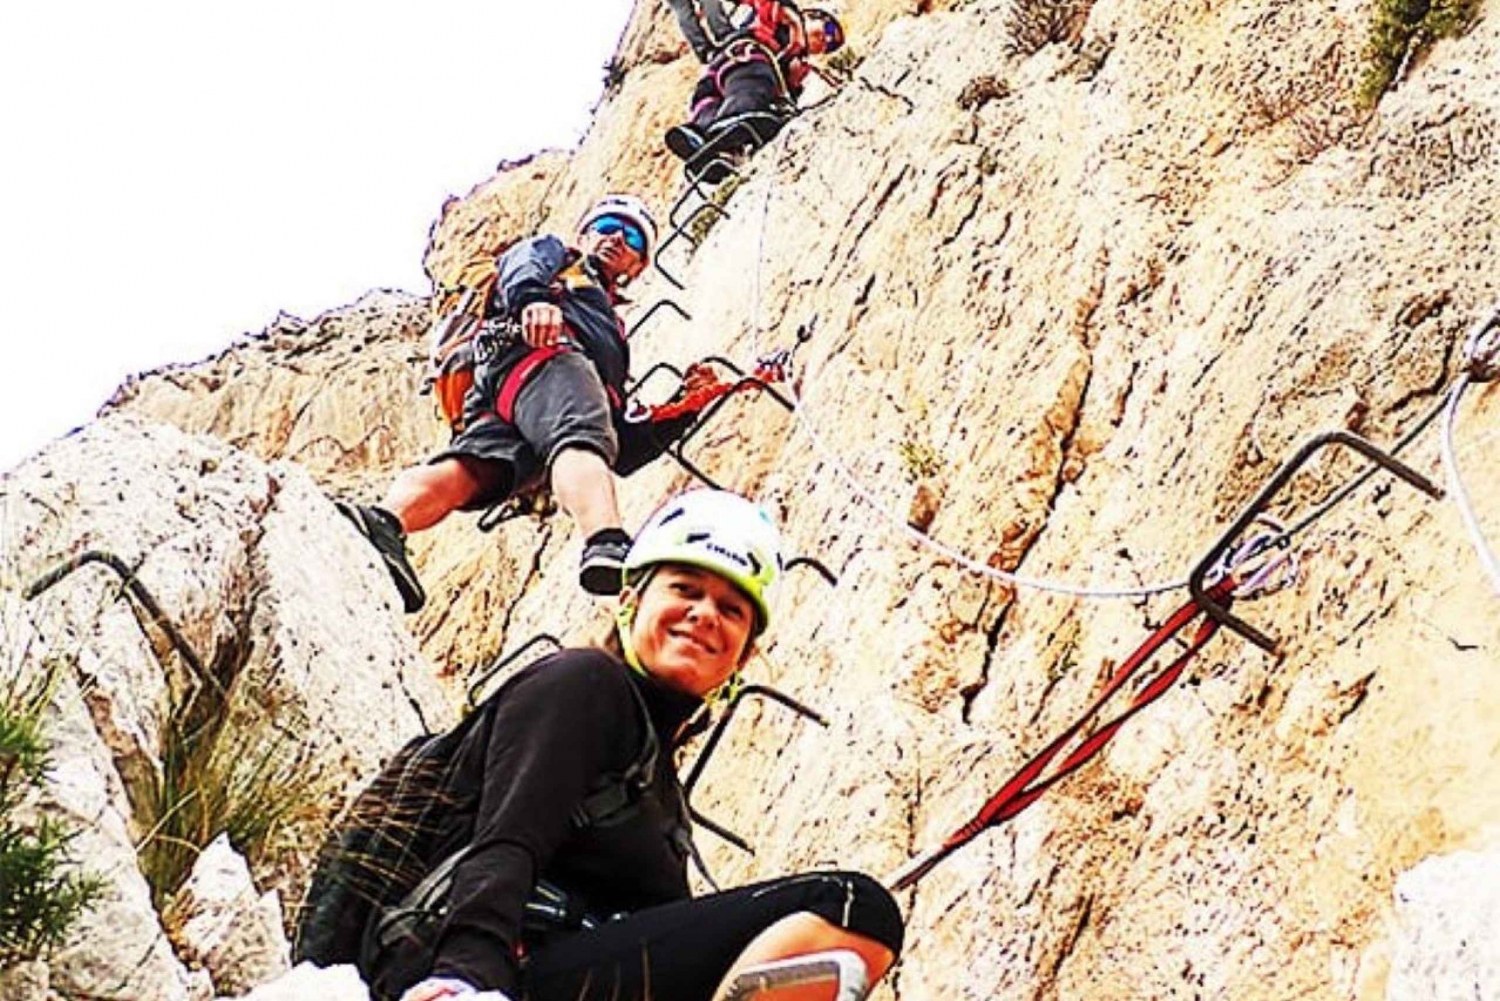 Alicante: Via Ferrata del Ponoig Guided Trek and Climb